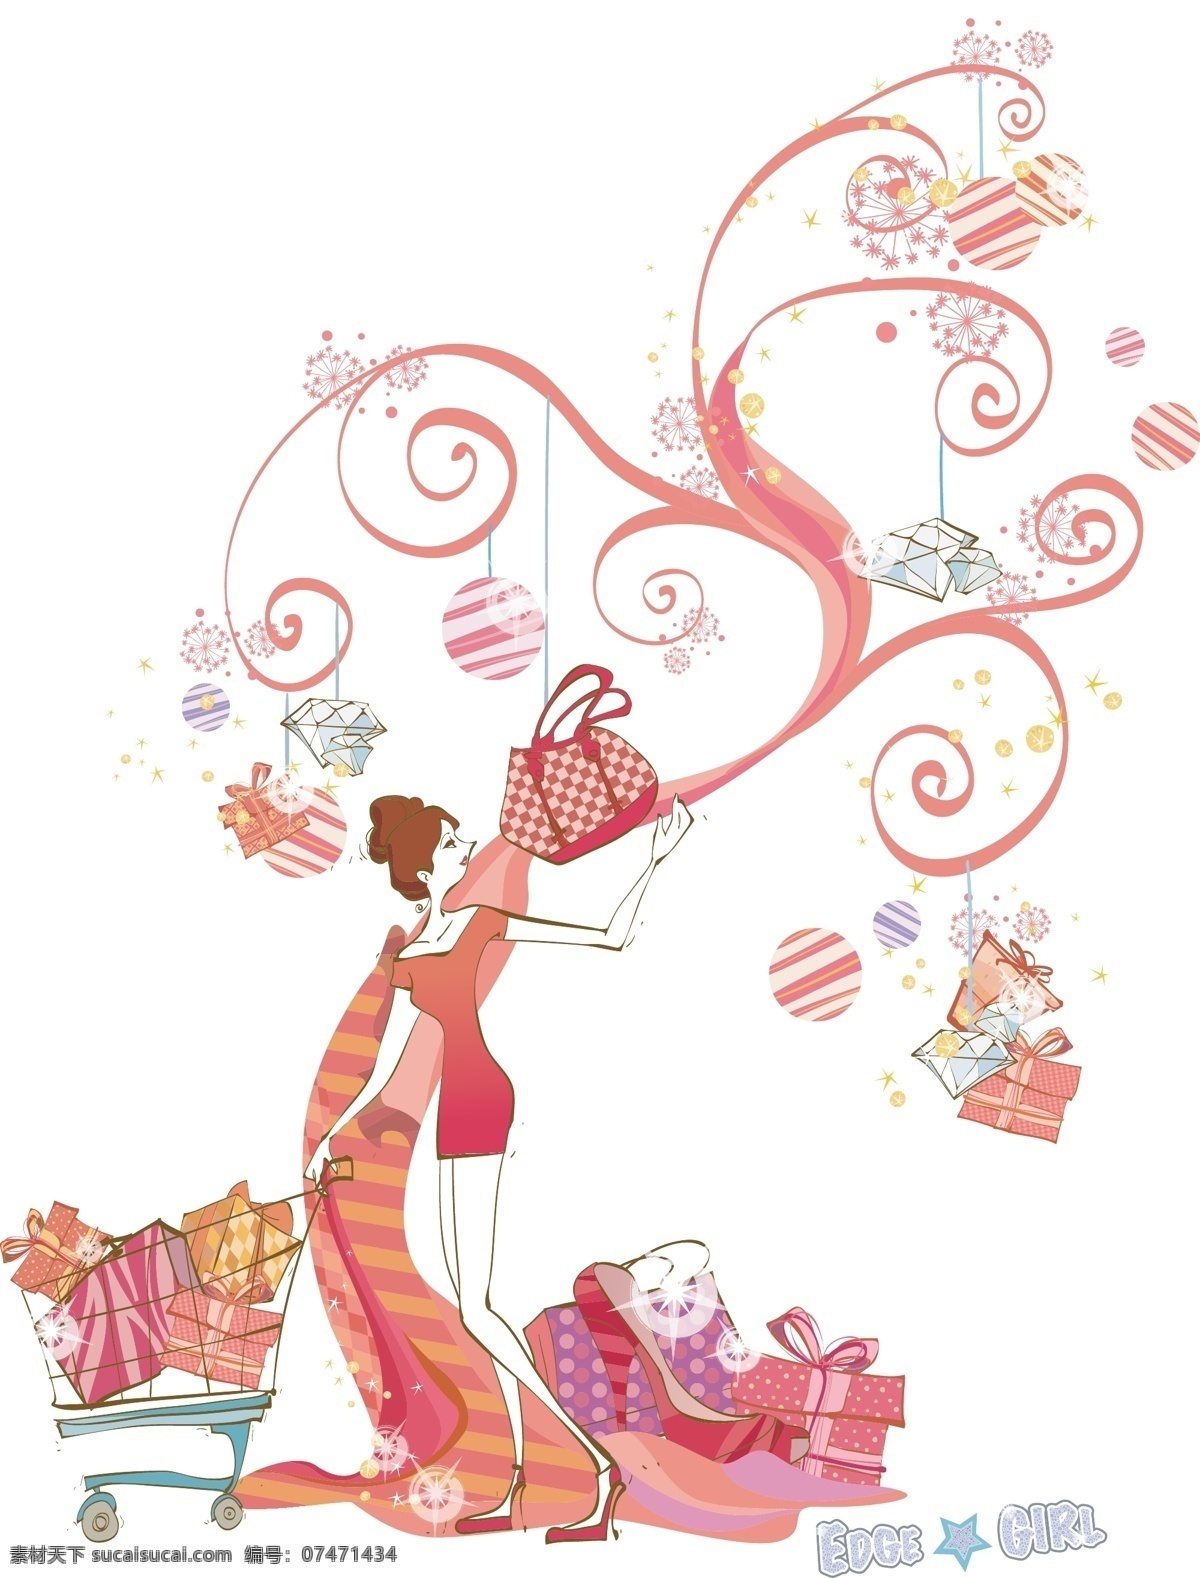 矢量 时尚 女孩 插画 粉红 购物 包包 高跟鞋 购物车 花纹 可爱 礼品 手绘 矢量图